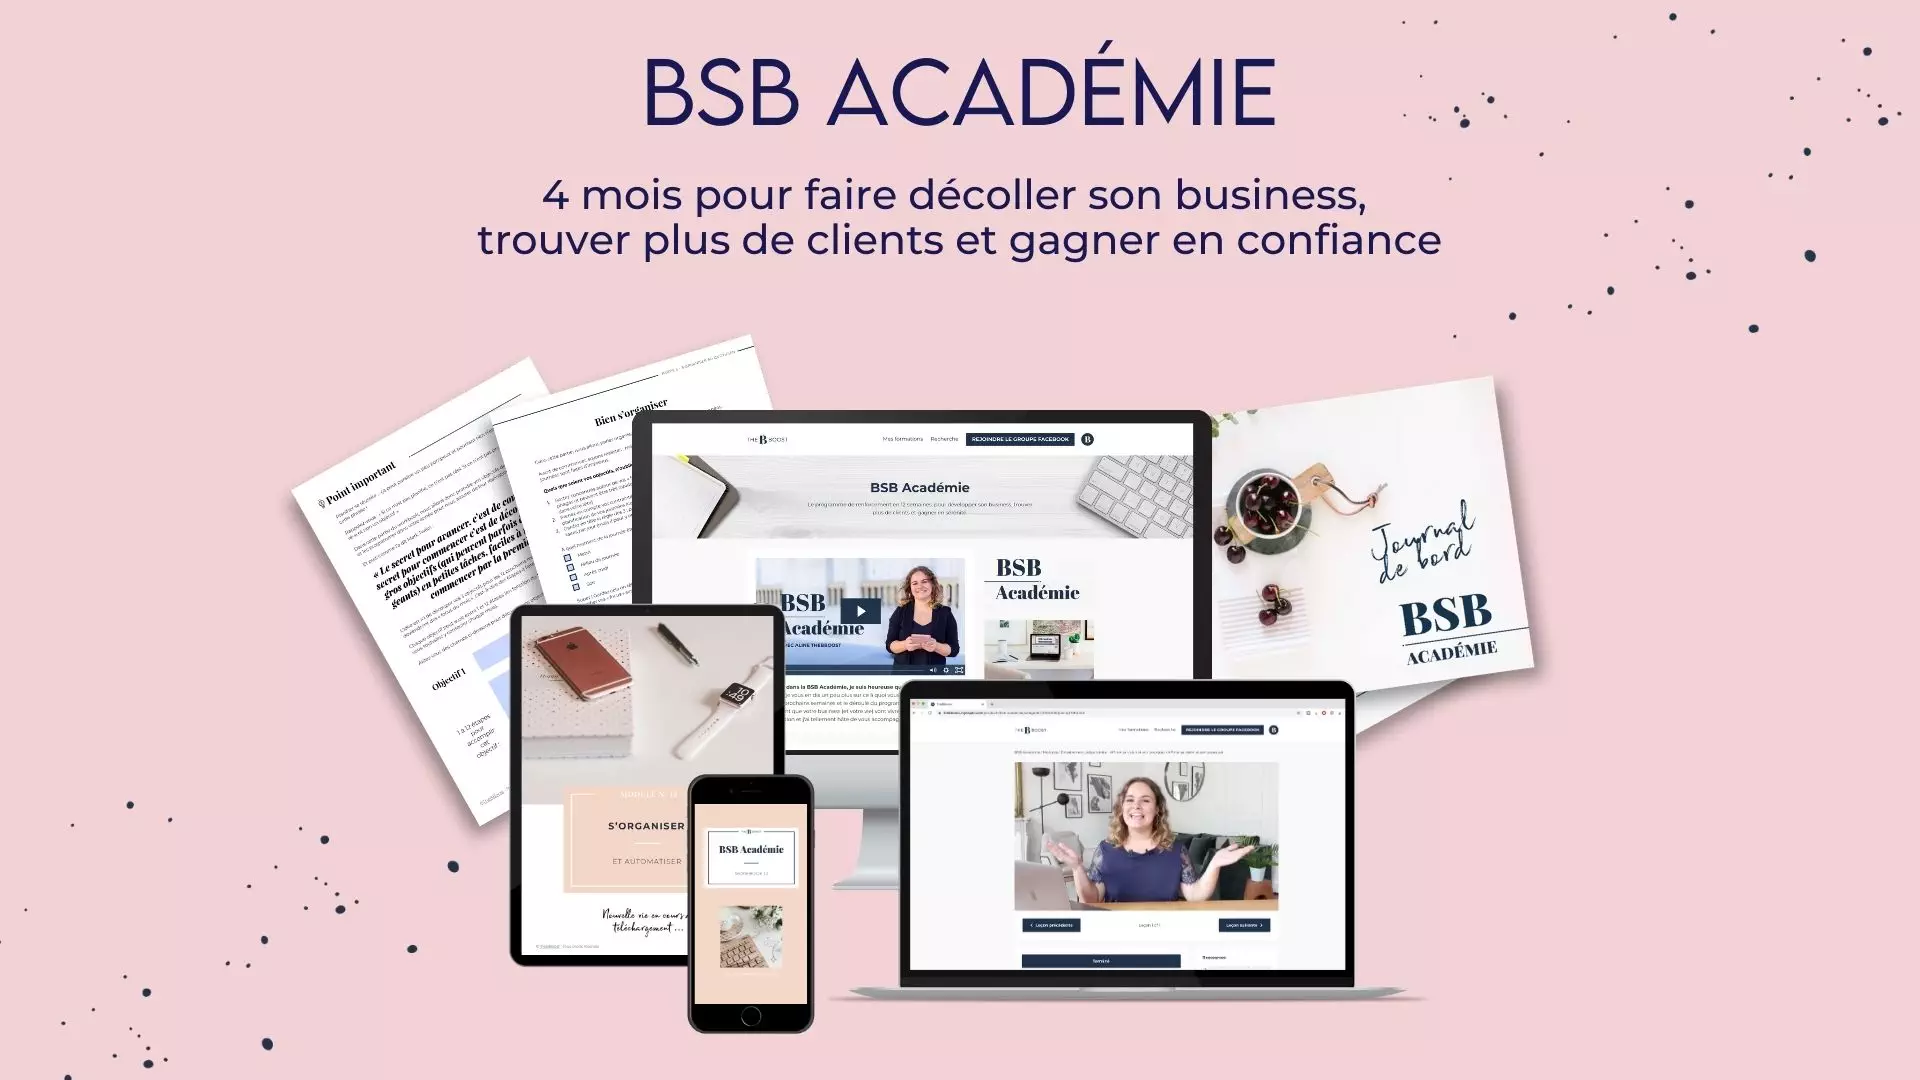 You are currently viewing La formation BSB Académie de The Bboost : un programme complet pour booster votre business